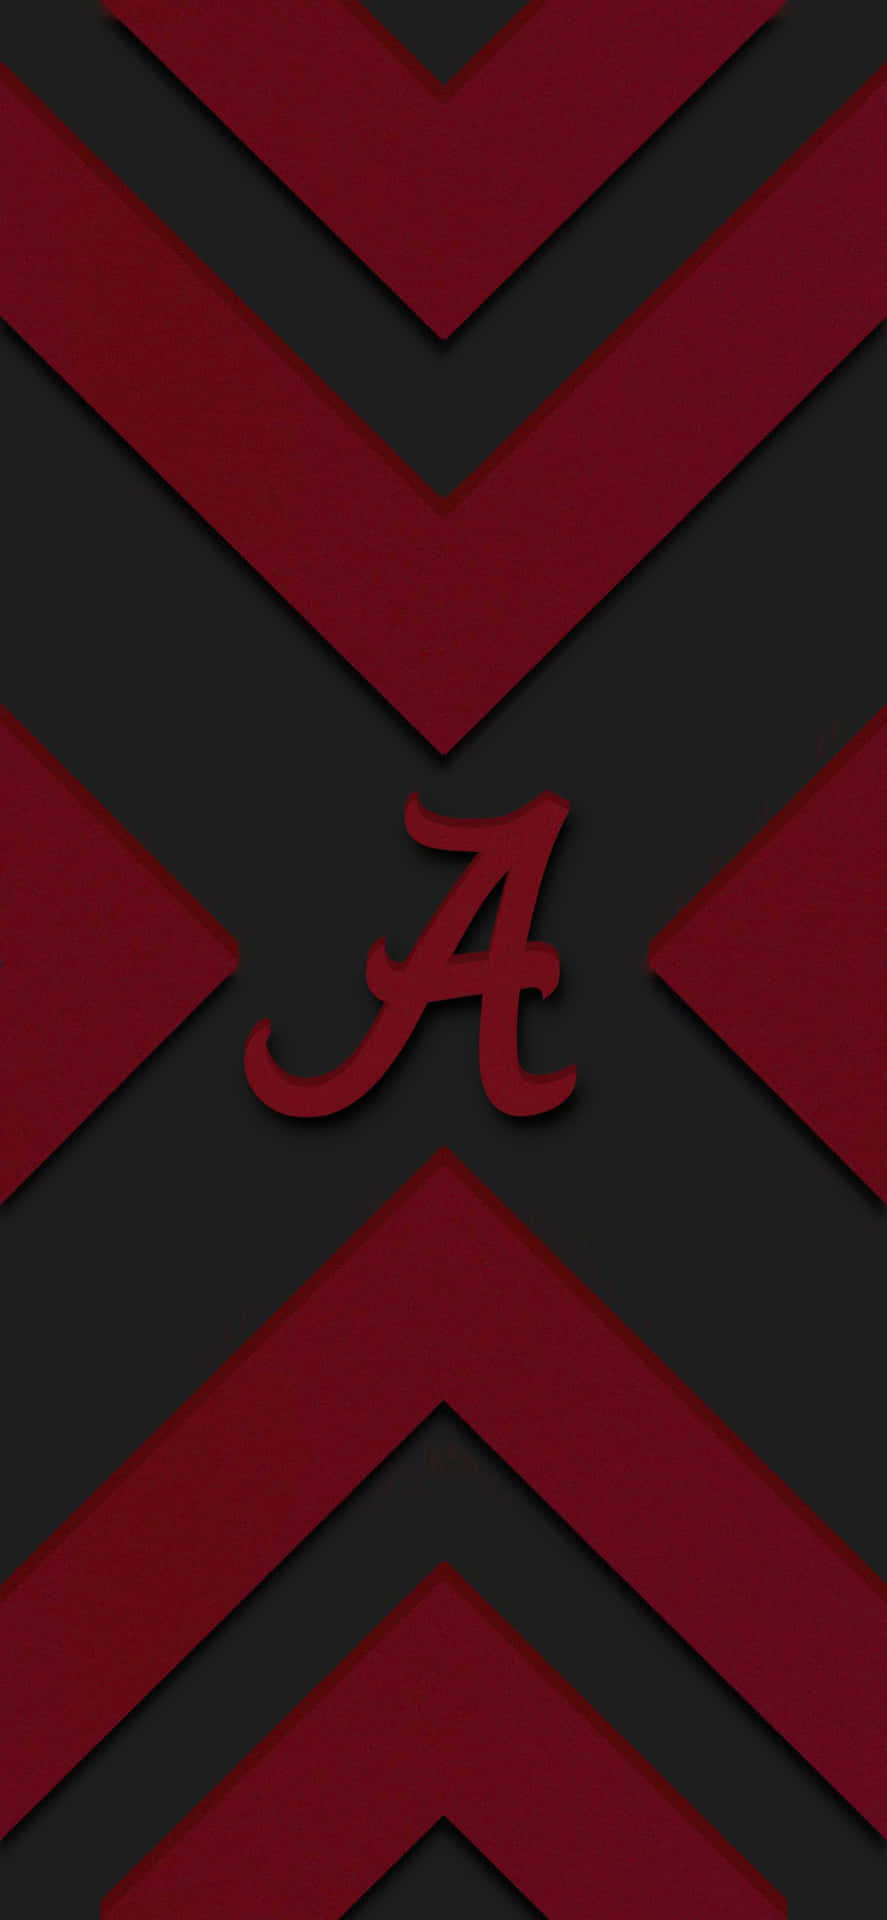 Erlebensie Die Spannung Des Alabama Footballs Auf Ihrem Iphone! Wallpaper